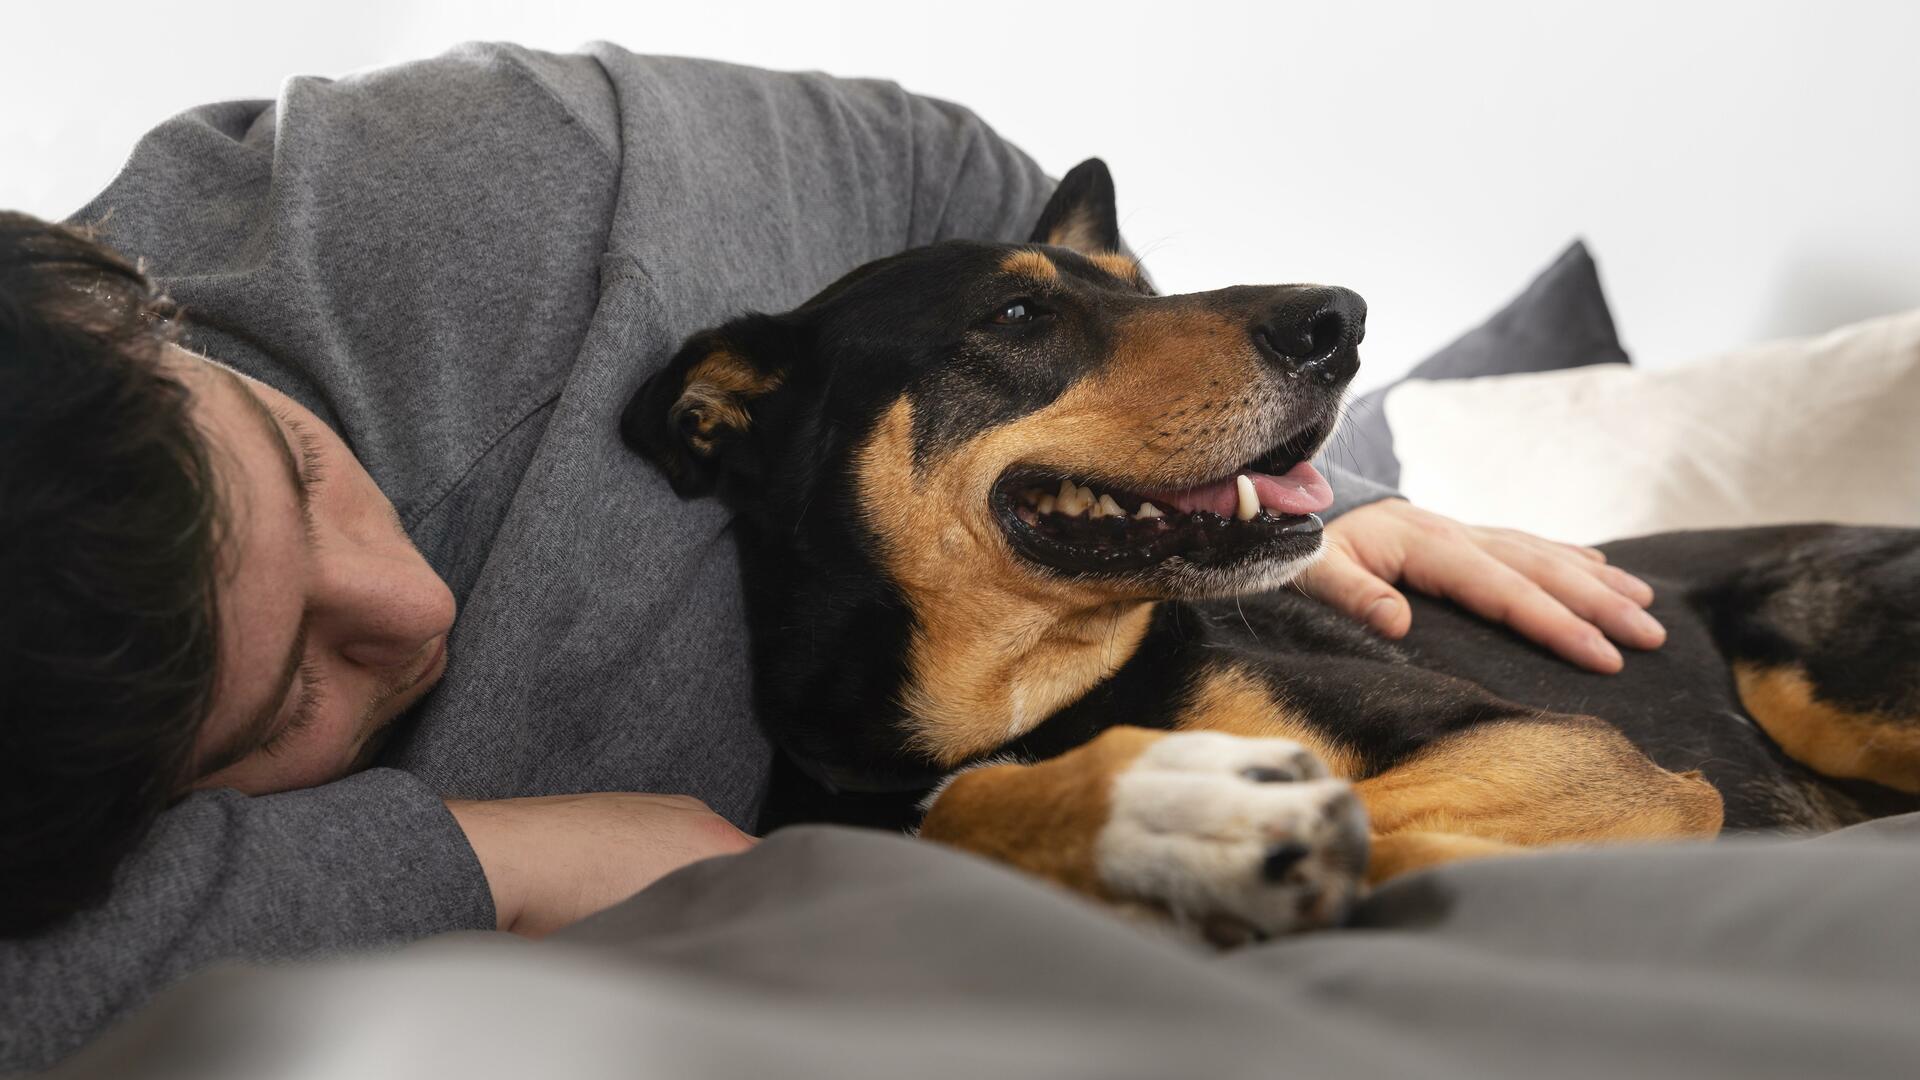 Las ventajas de dormir con perros, según un estudio médico